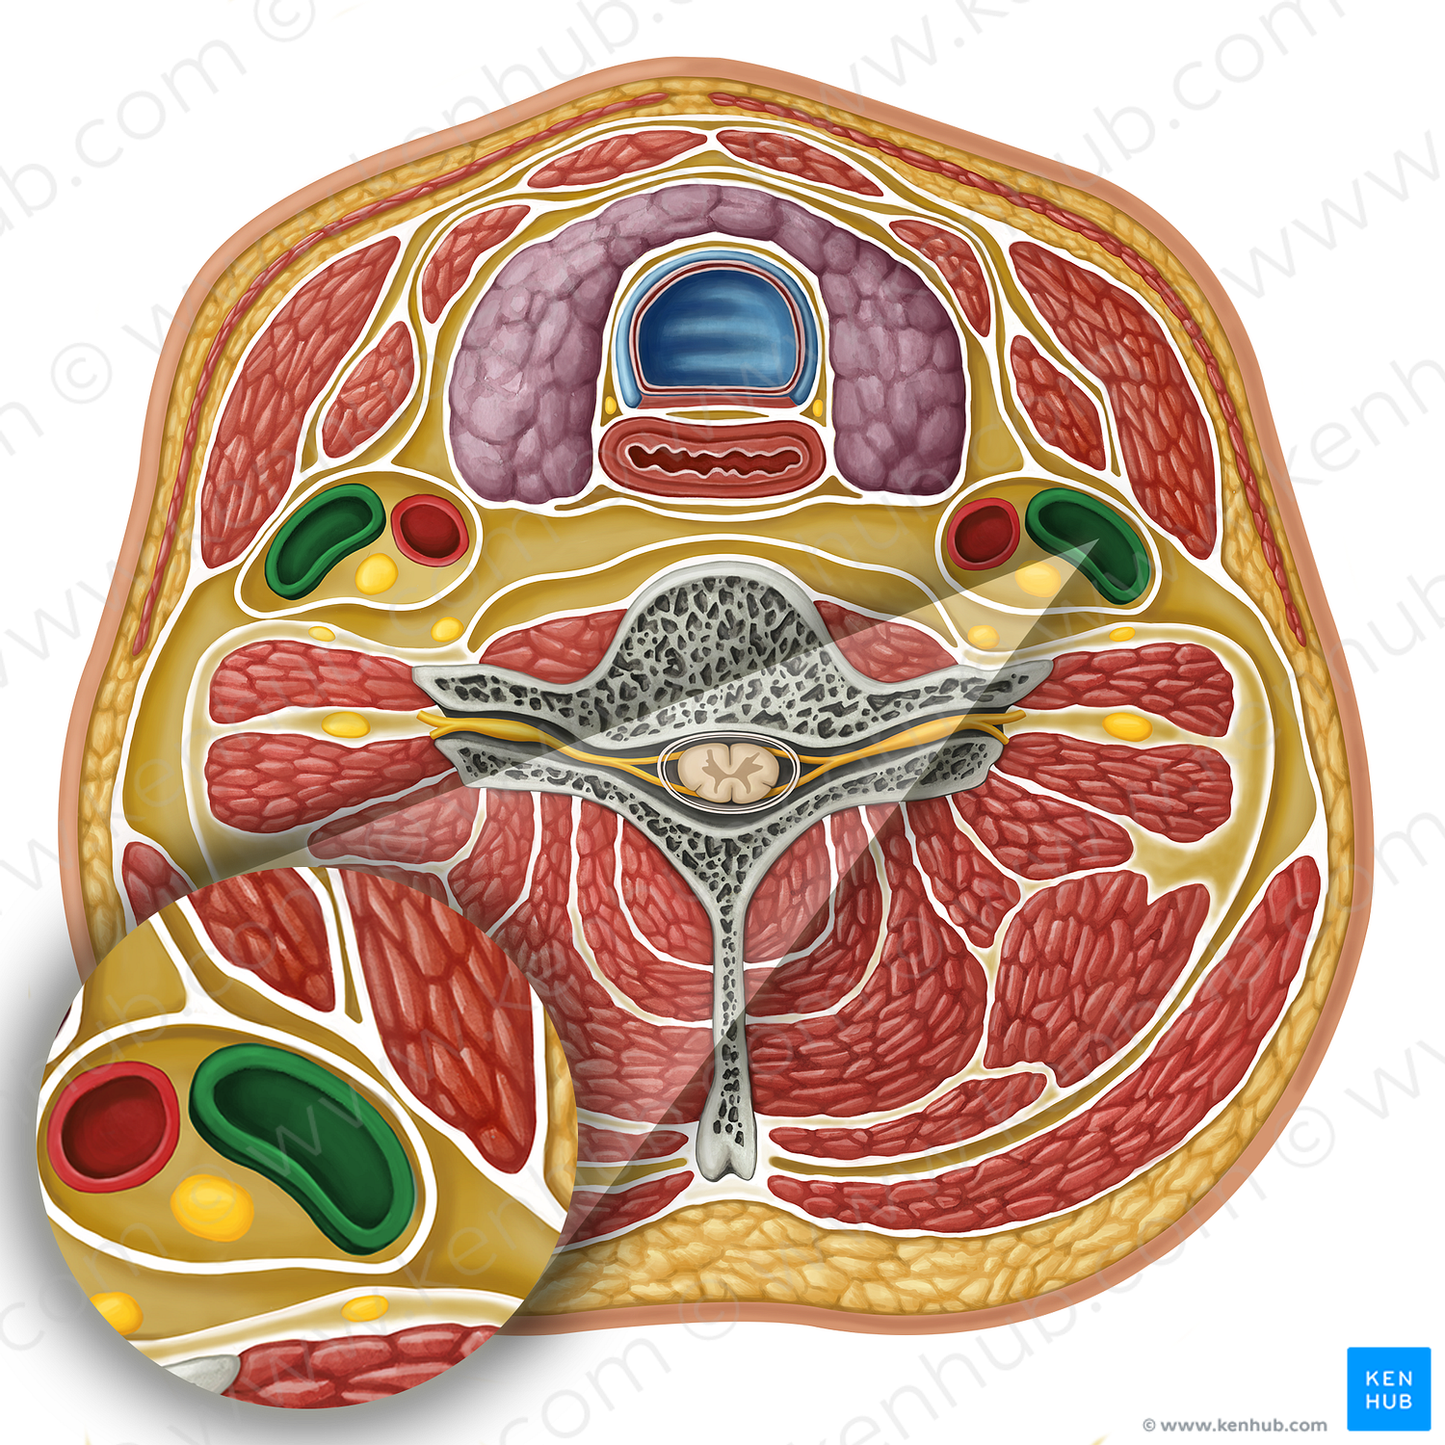 Internal jugular vein (#17299)